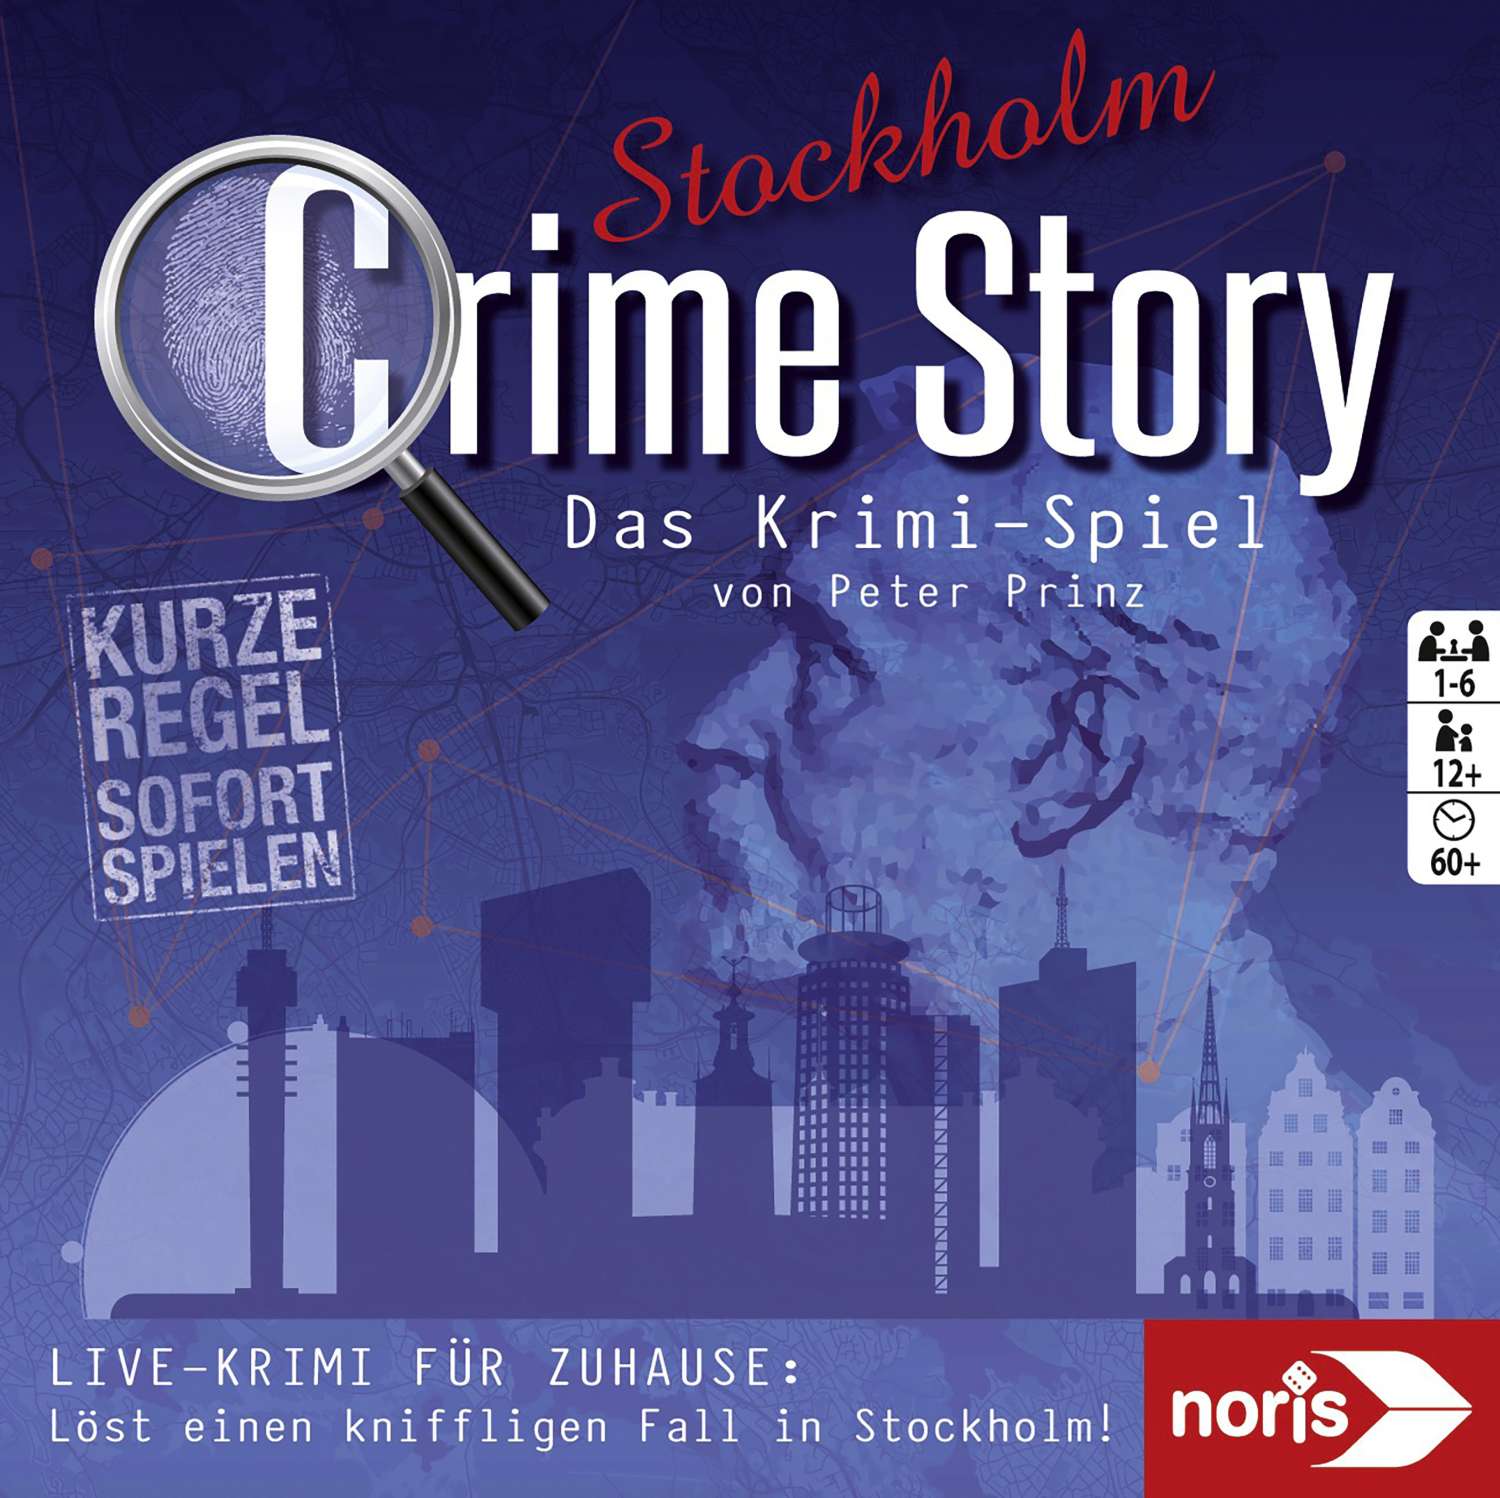 Zoch Crime Story Krimi Kartenspiel Stockholm ab 12 Jahre